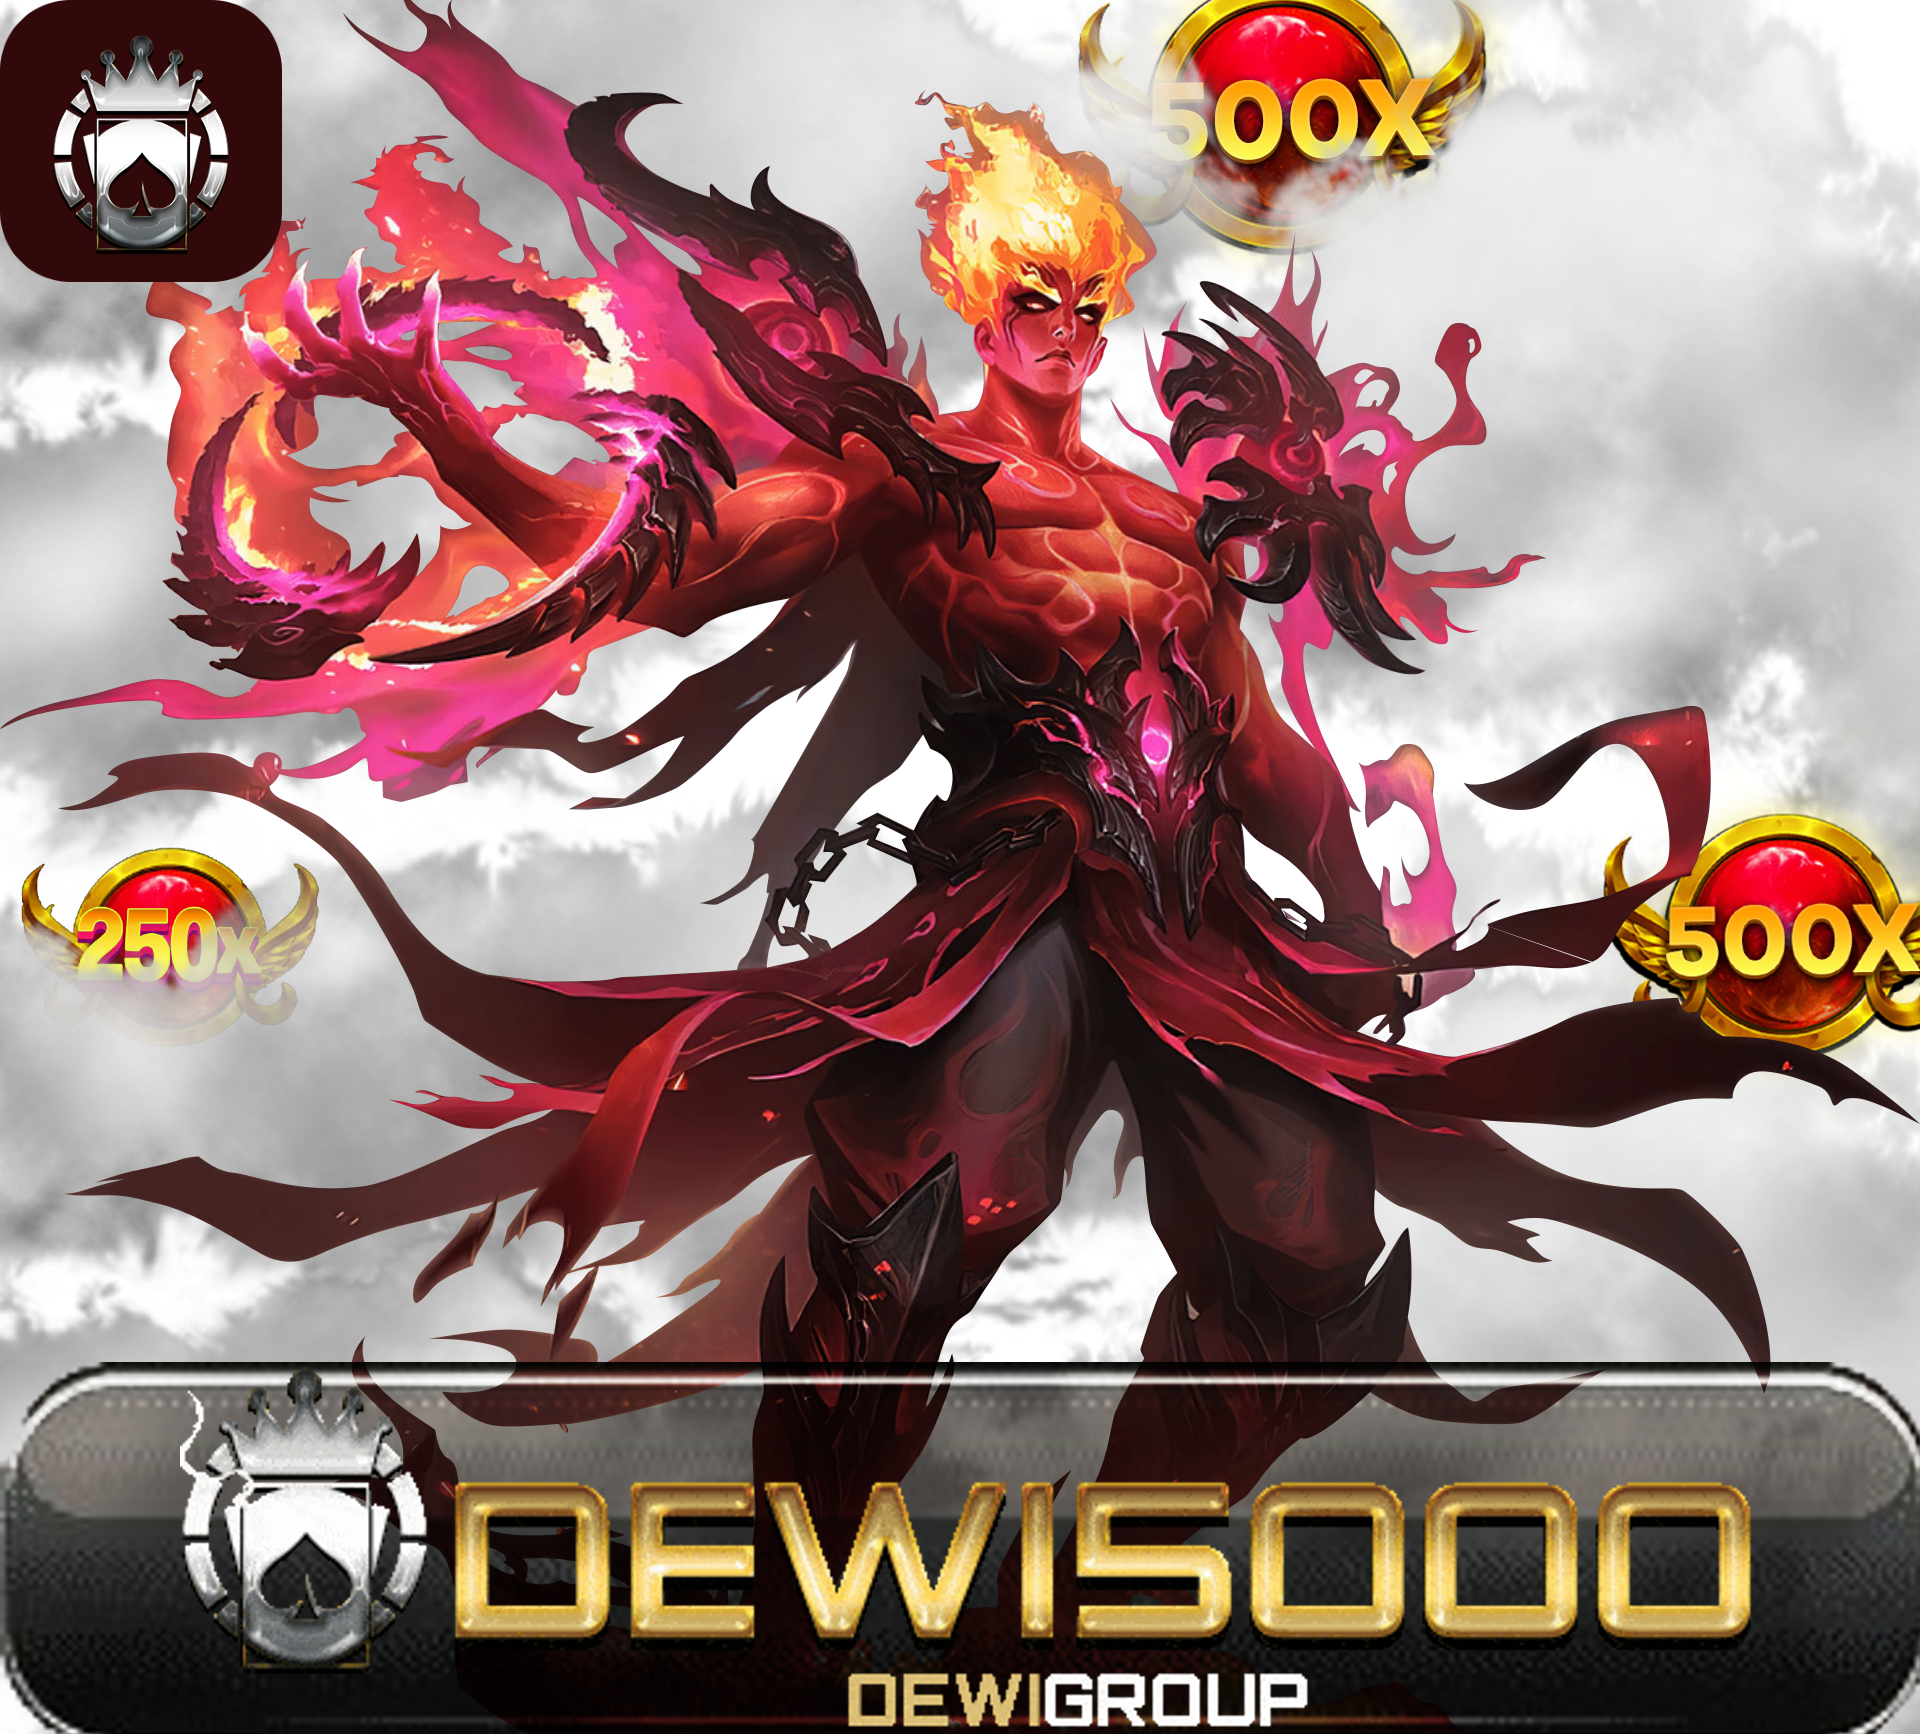 DEWI5000